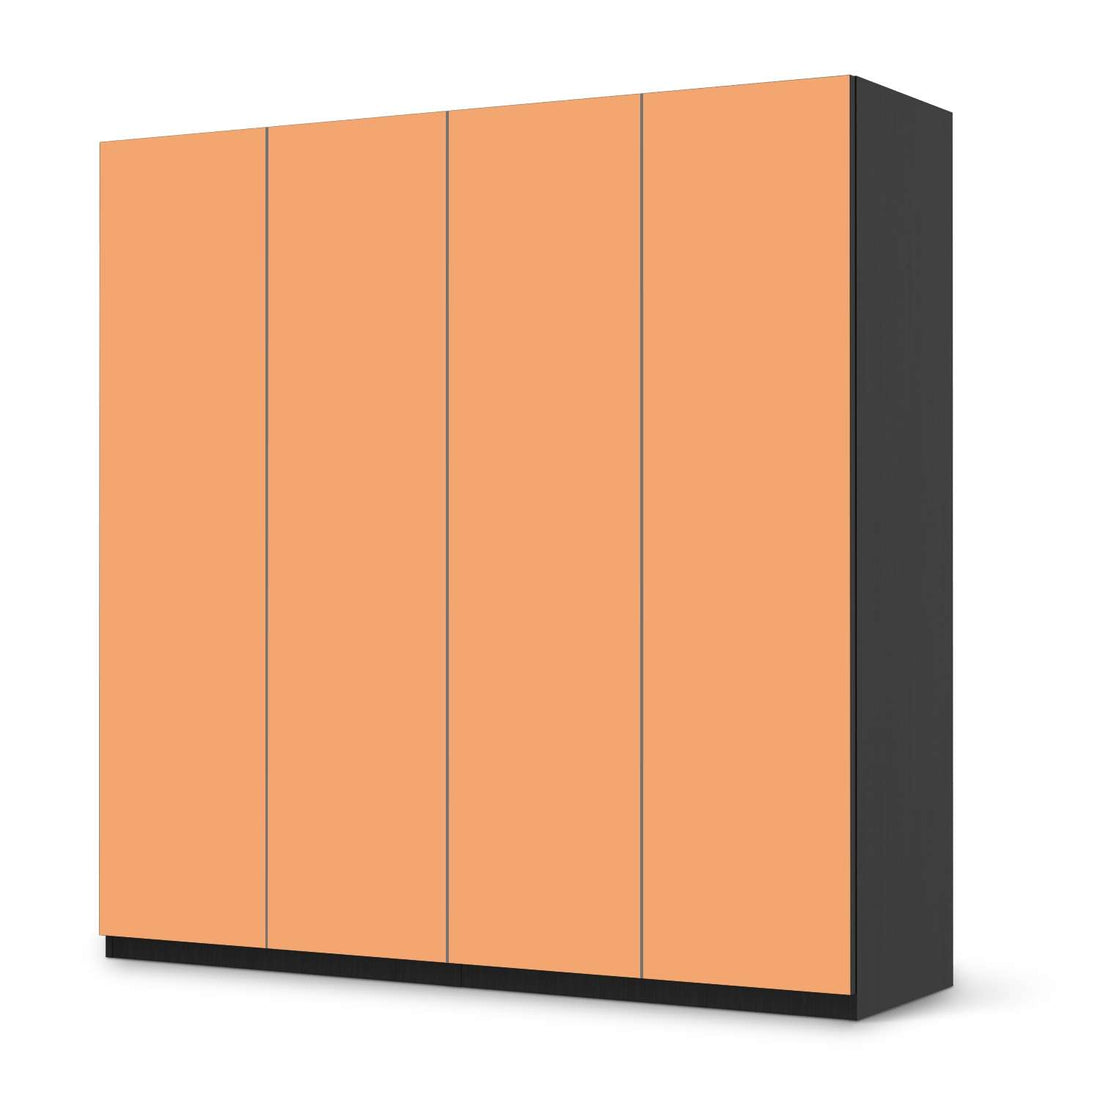 Klebefolie für Schränke Orange Light - IKEA Pax Schrank 201 cm Höhe - 4 Türen - schwarz